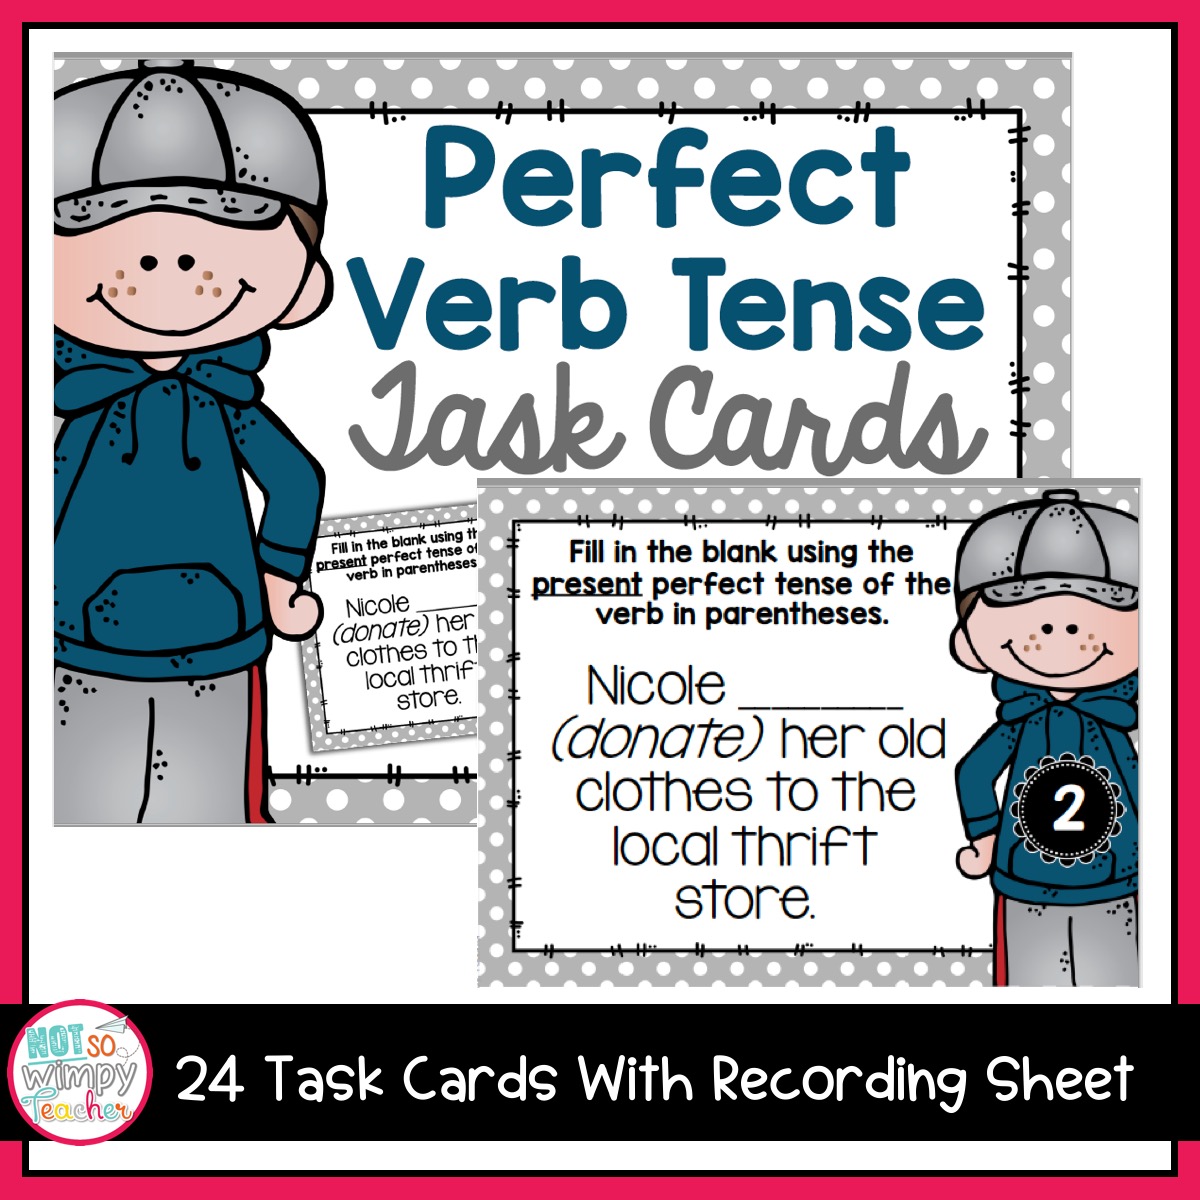 grammar-fifth-grade-activities-perfect-verb-tense-not-so-wimpy-teacher